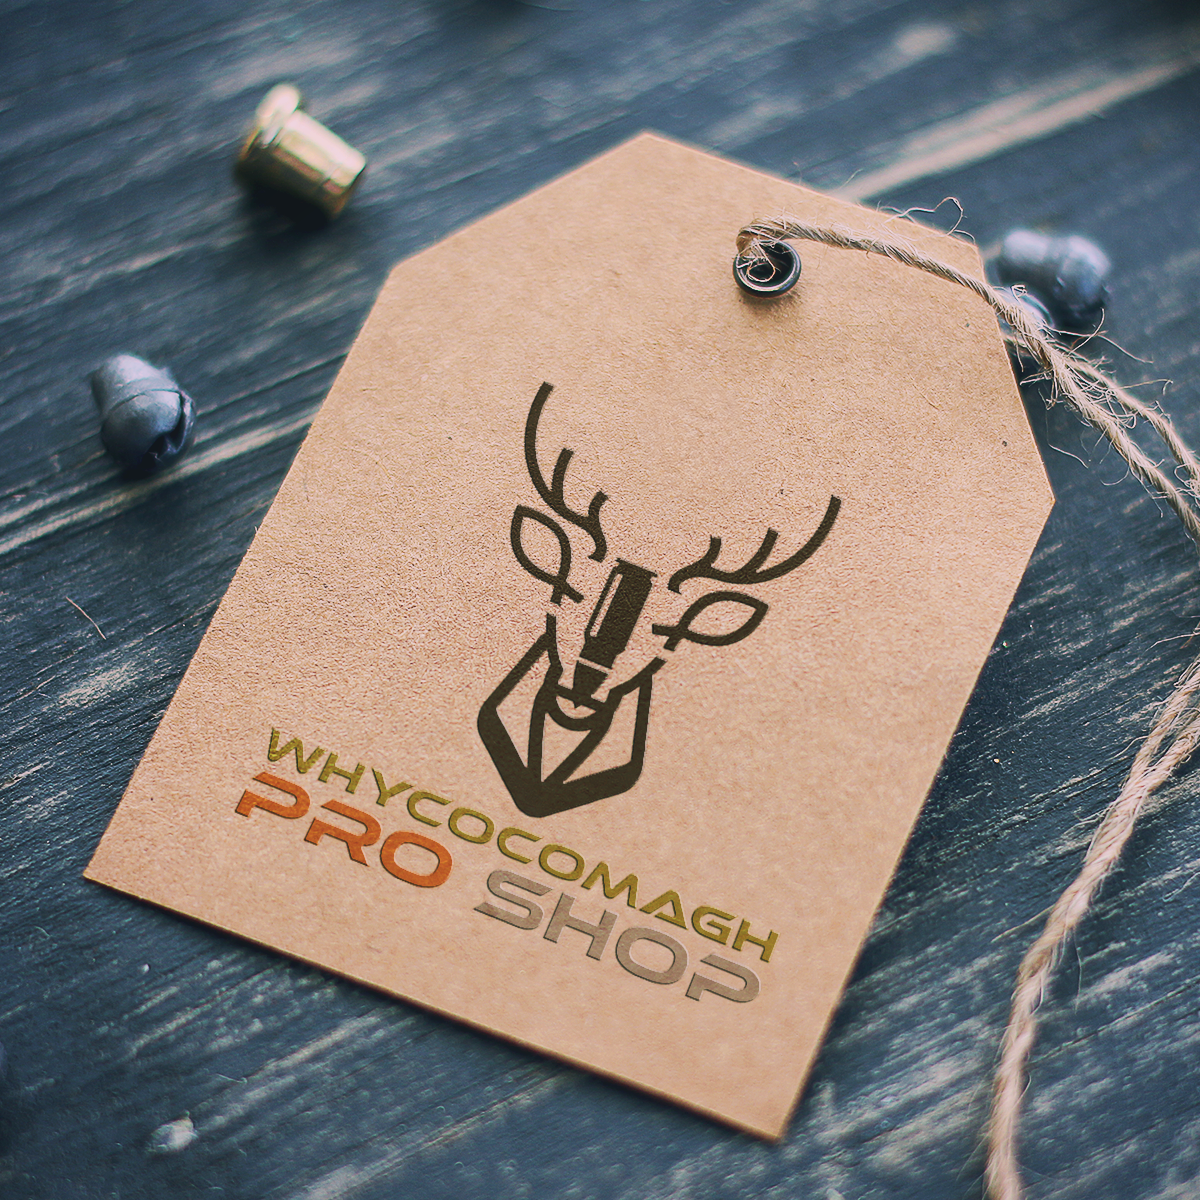 Hunting fishing logo pro shop deer fish Ammo